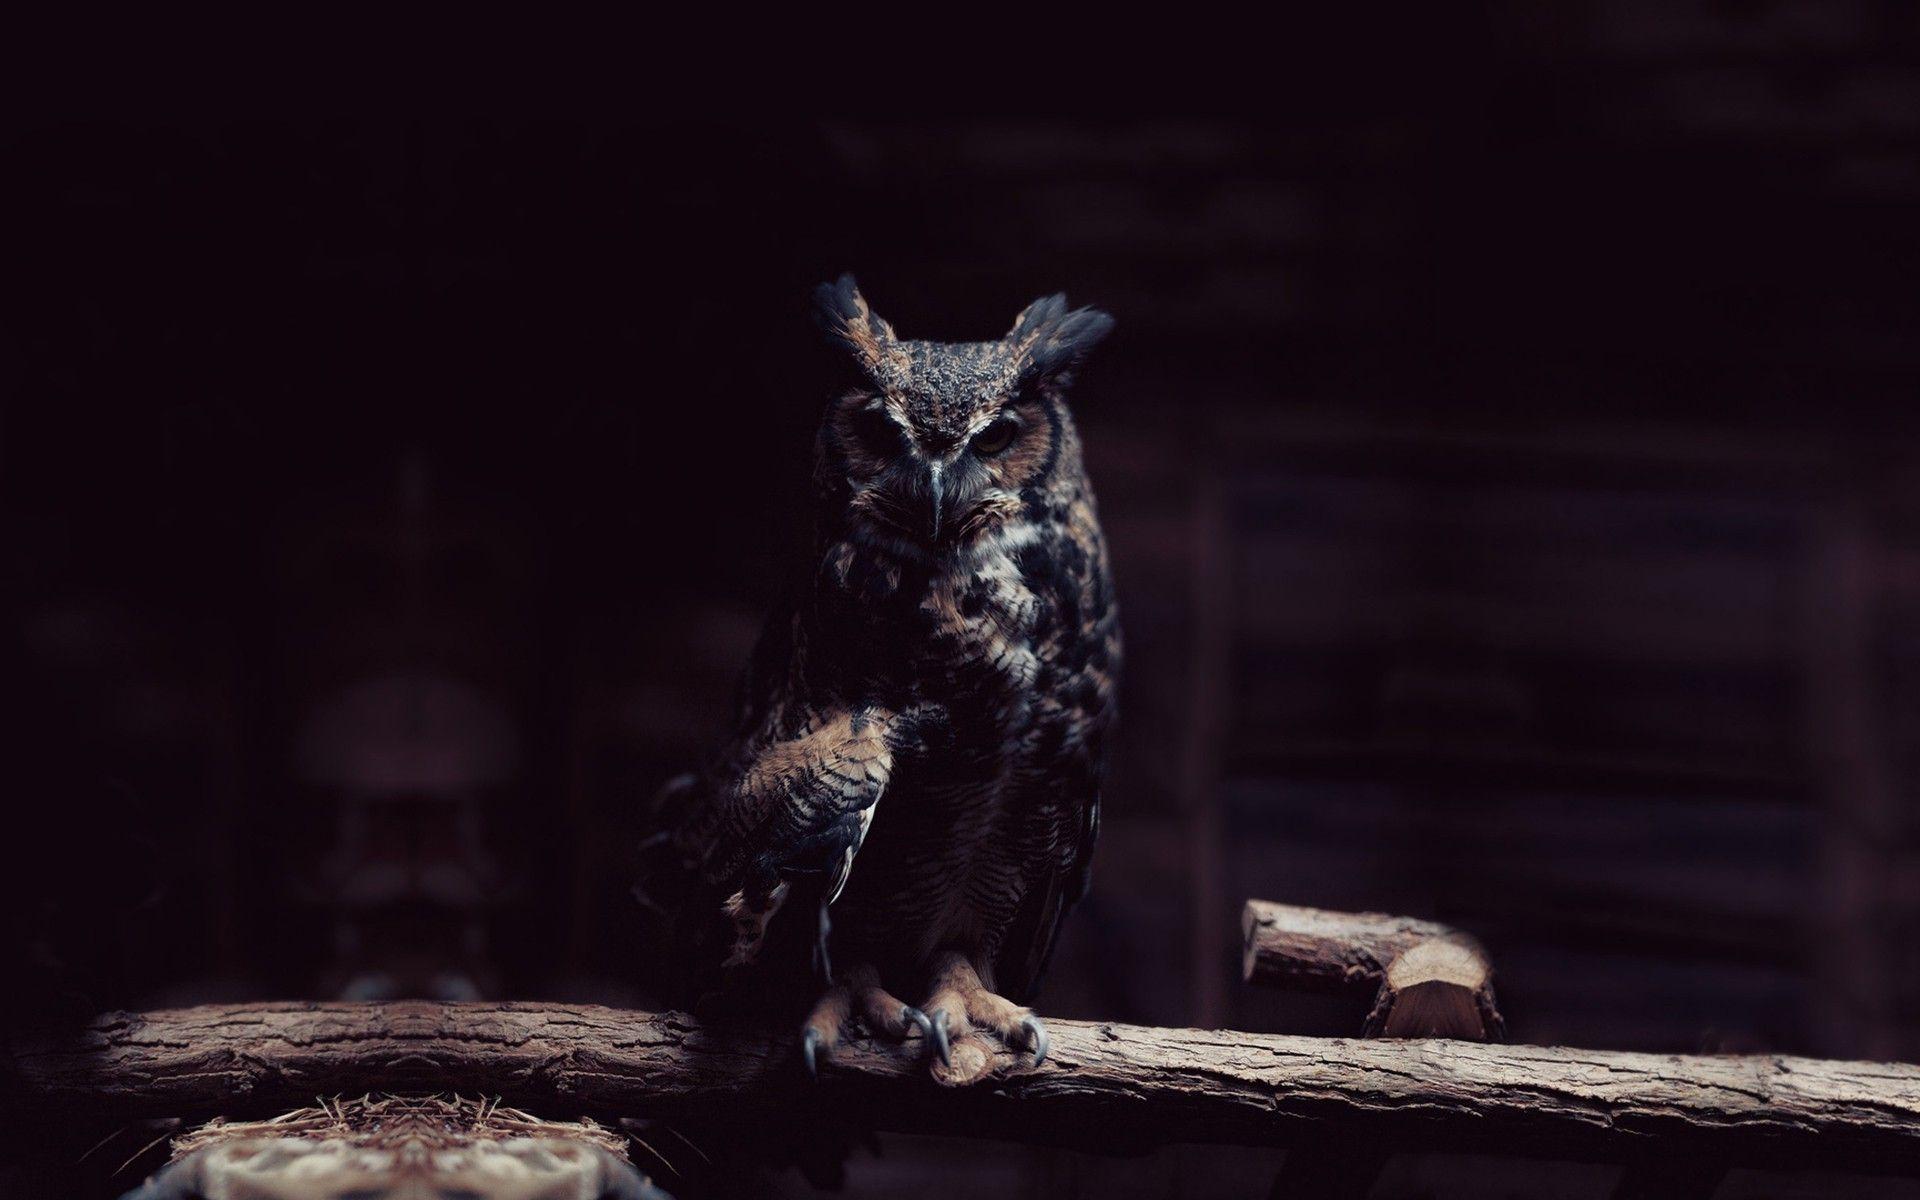 Dark Owl Wallpaper